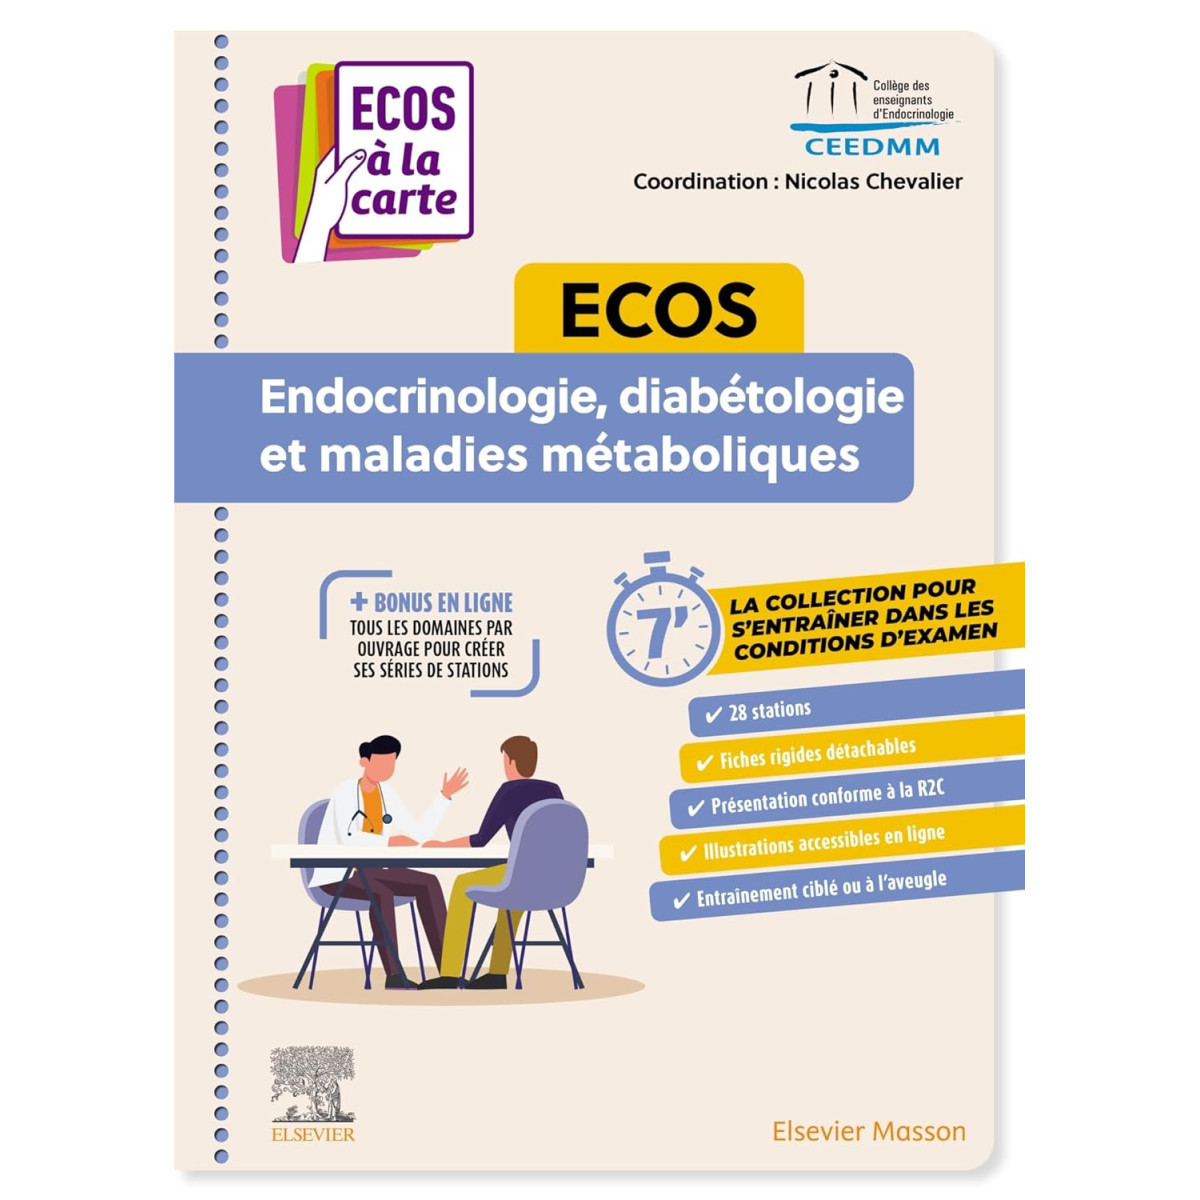 ECOS Endocrinologie, diabétologie et maladies métaboliques: ECOS à la carte